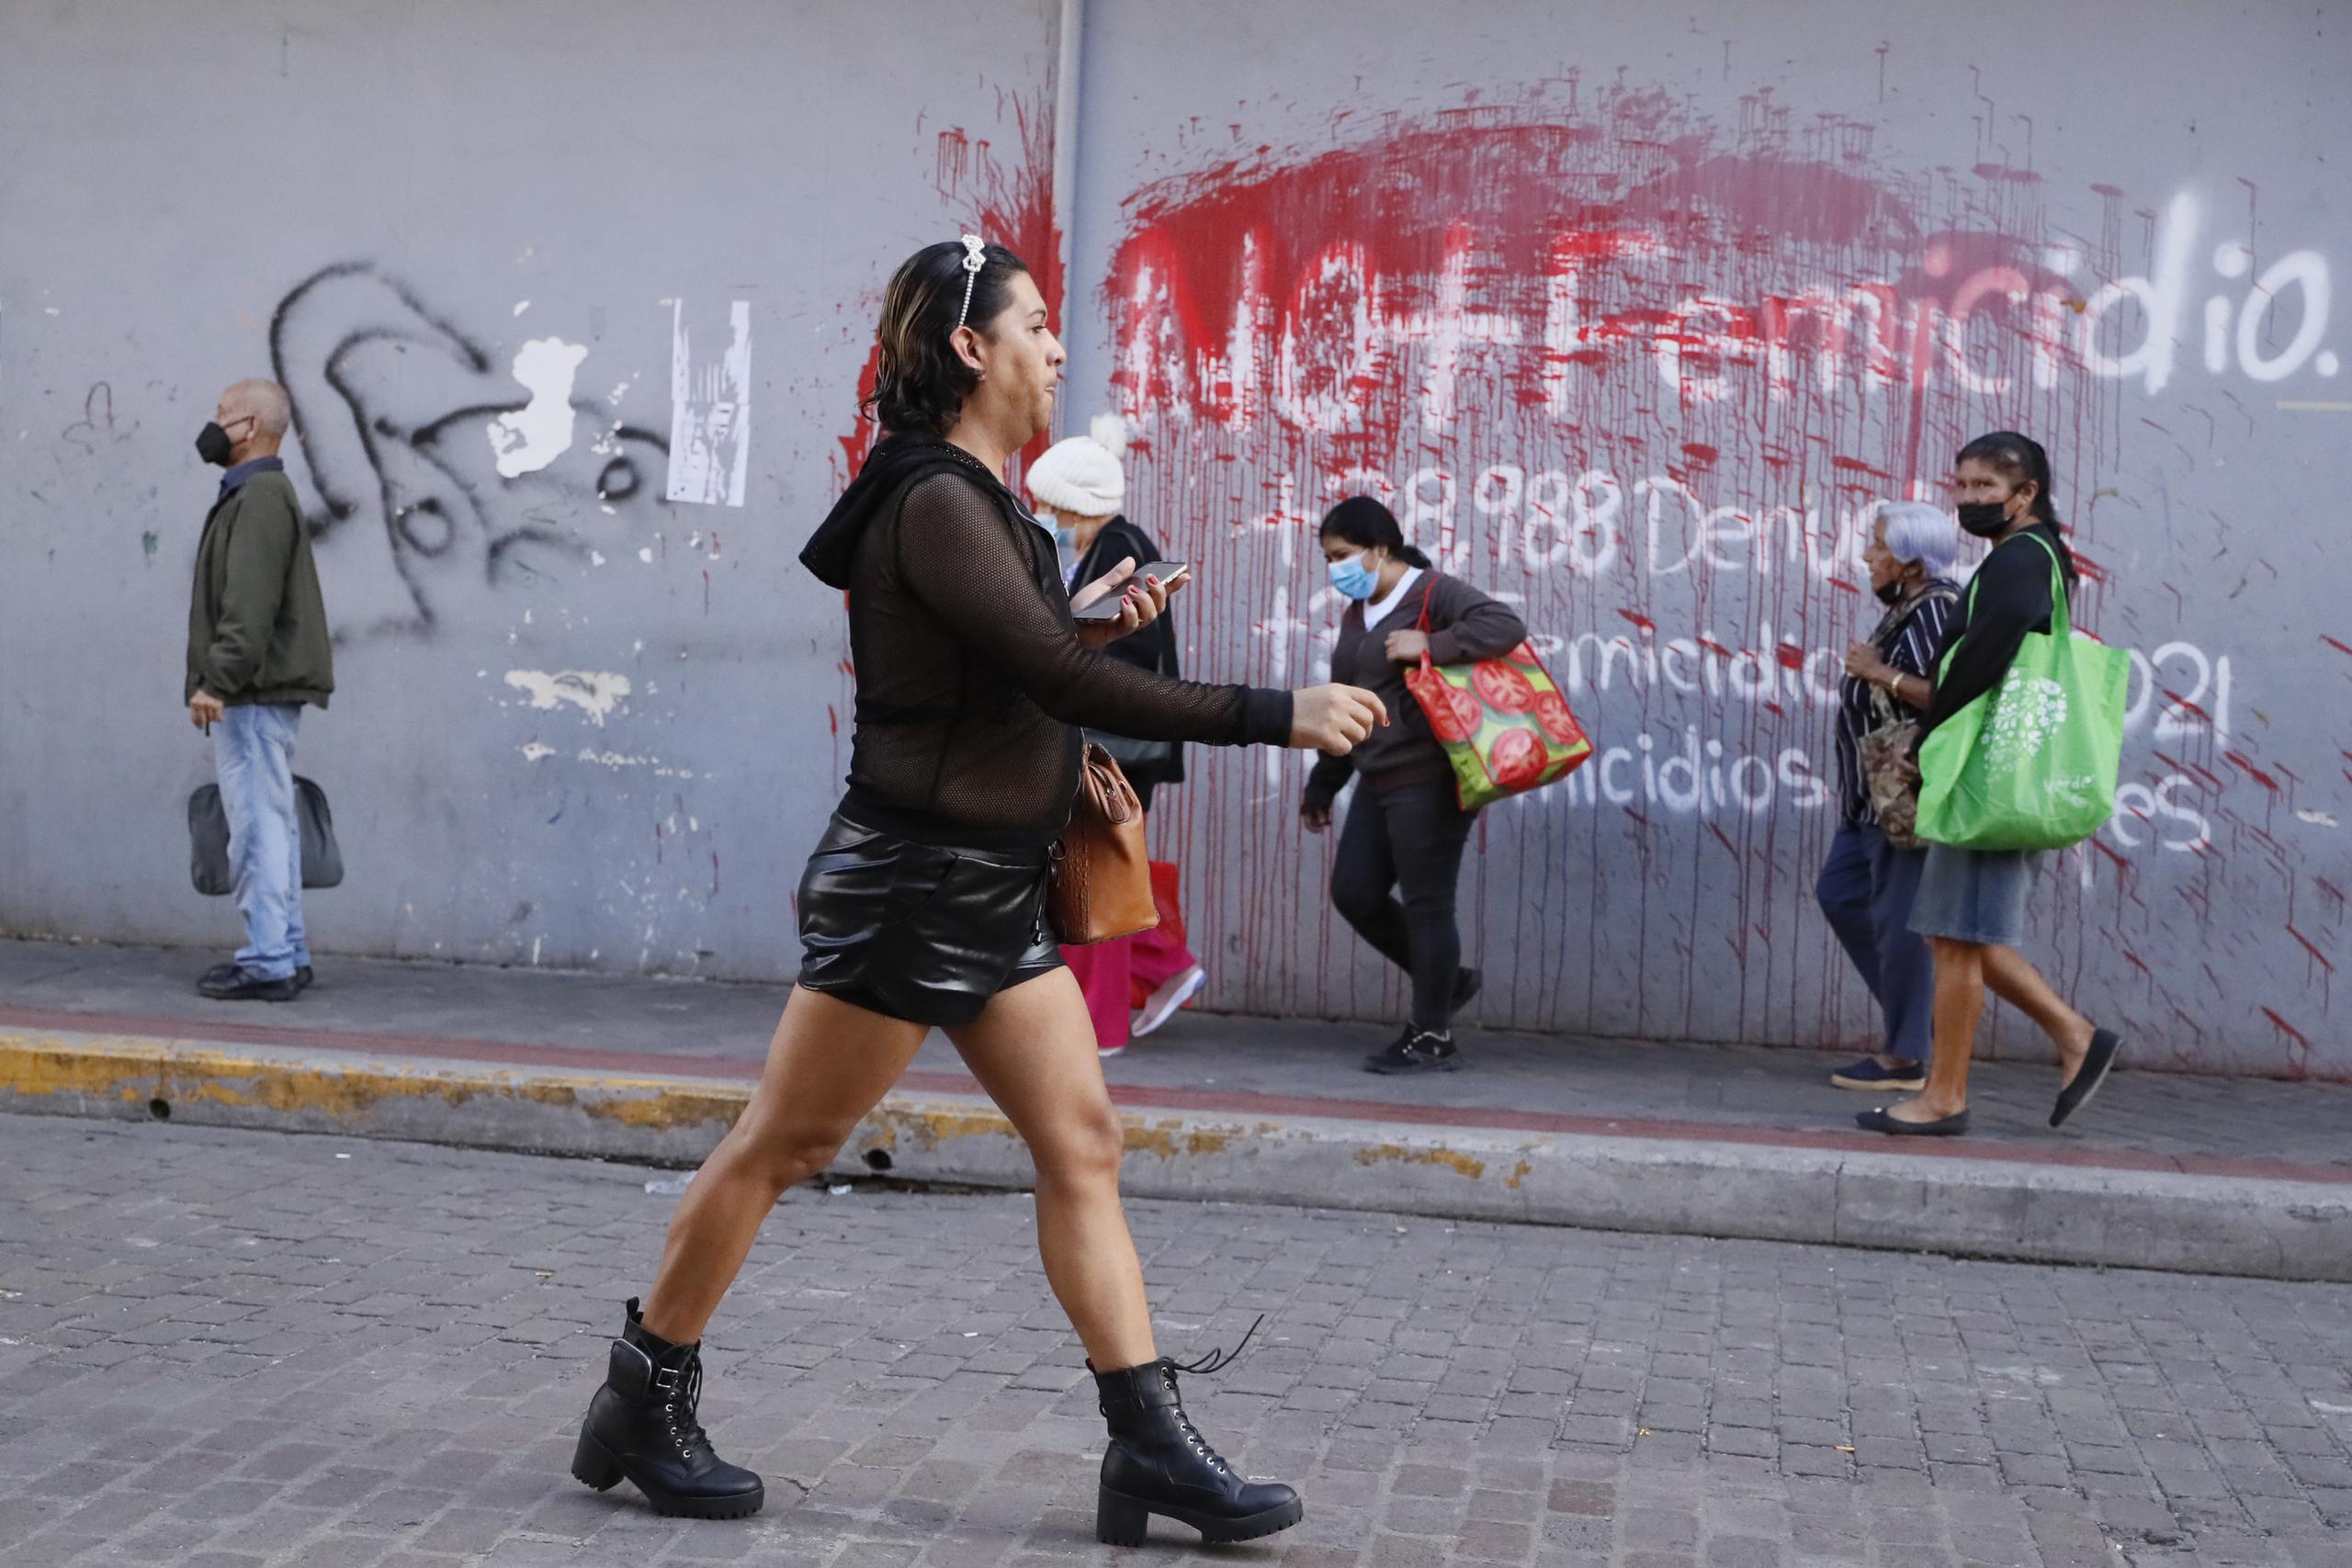 Elle de la comunidad LGBTI camina frente a un aviso pintado en una pared en contra del femicidio hoy en Tegucigalpa (Honduras). EFE/Gustavo Amador
